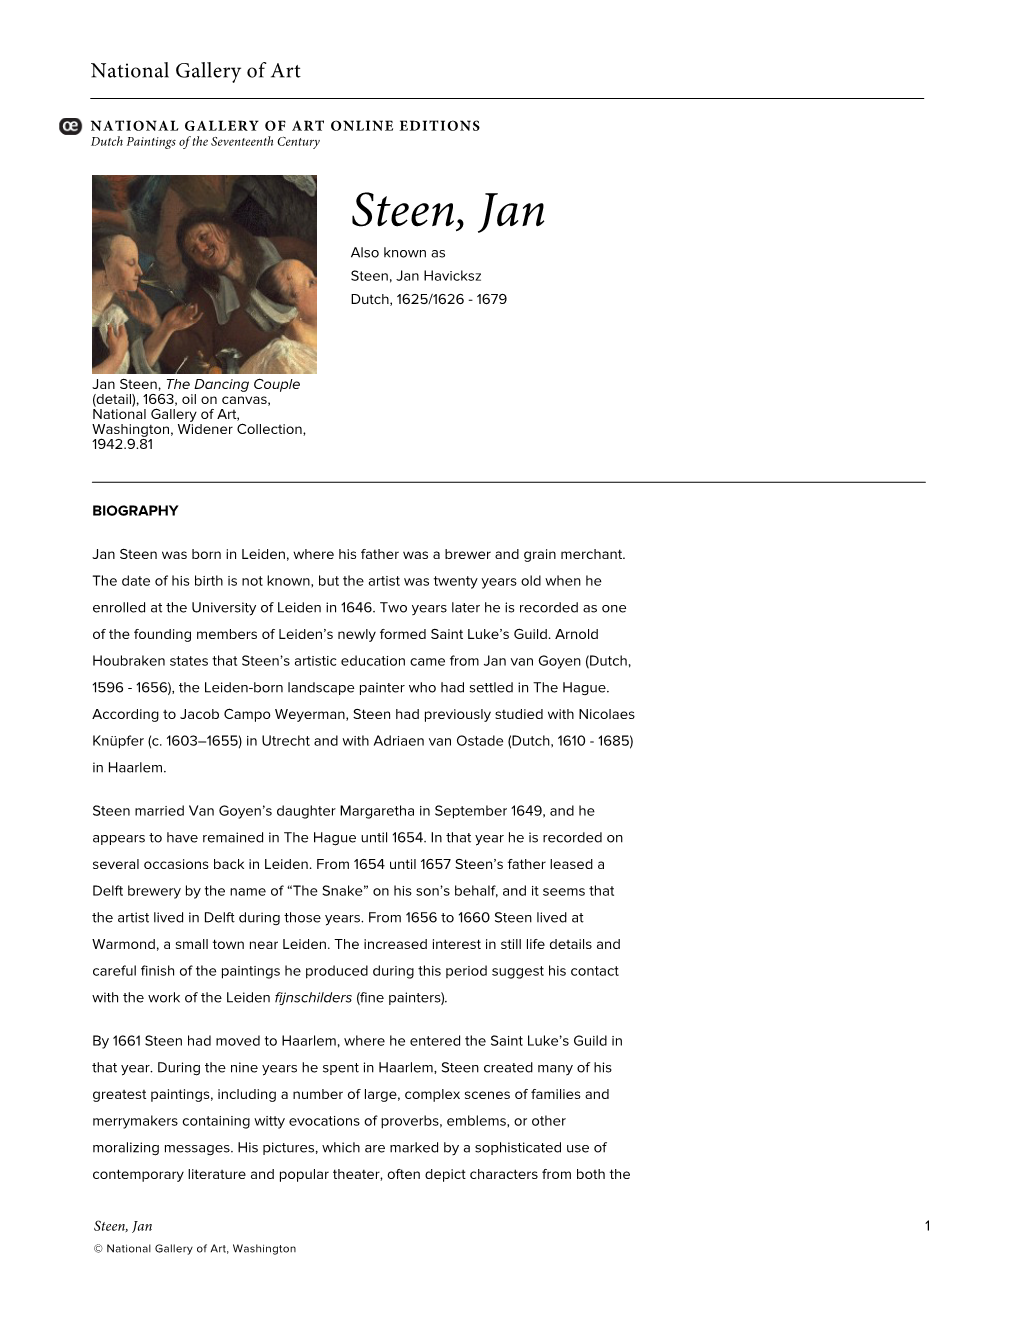 Steen, Jan Also Known As Steen, Jan Havicksz Dutch, 1625/1626 - 1679